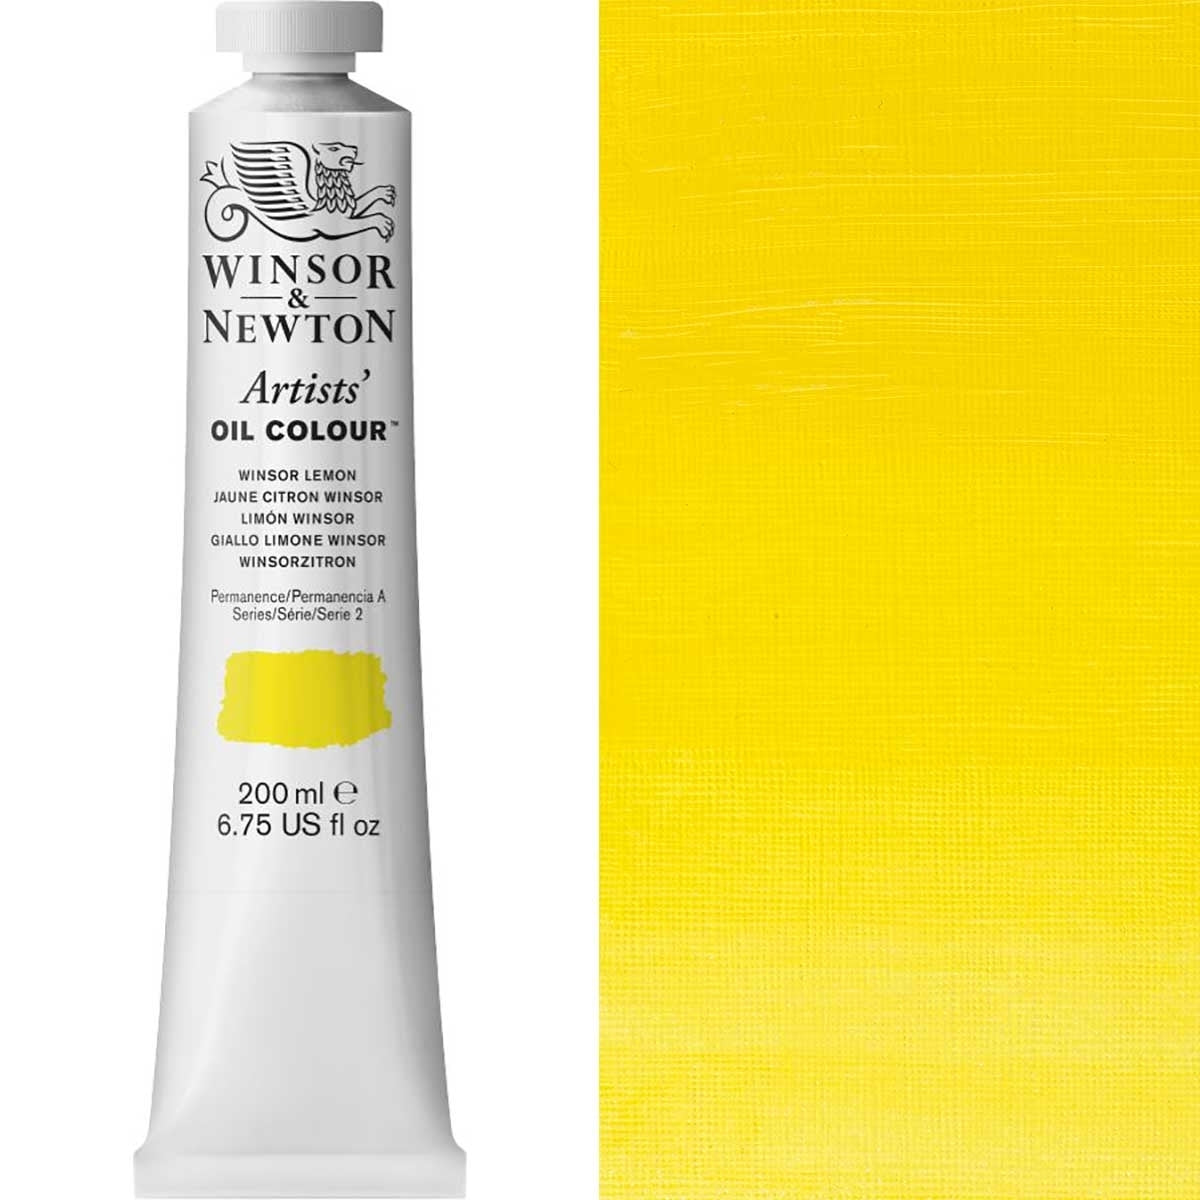 Winsor e Newton - Artists 'Oil Color - 200ml - Winsor Lemon